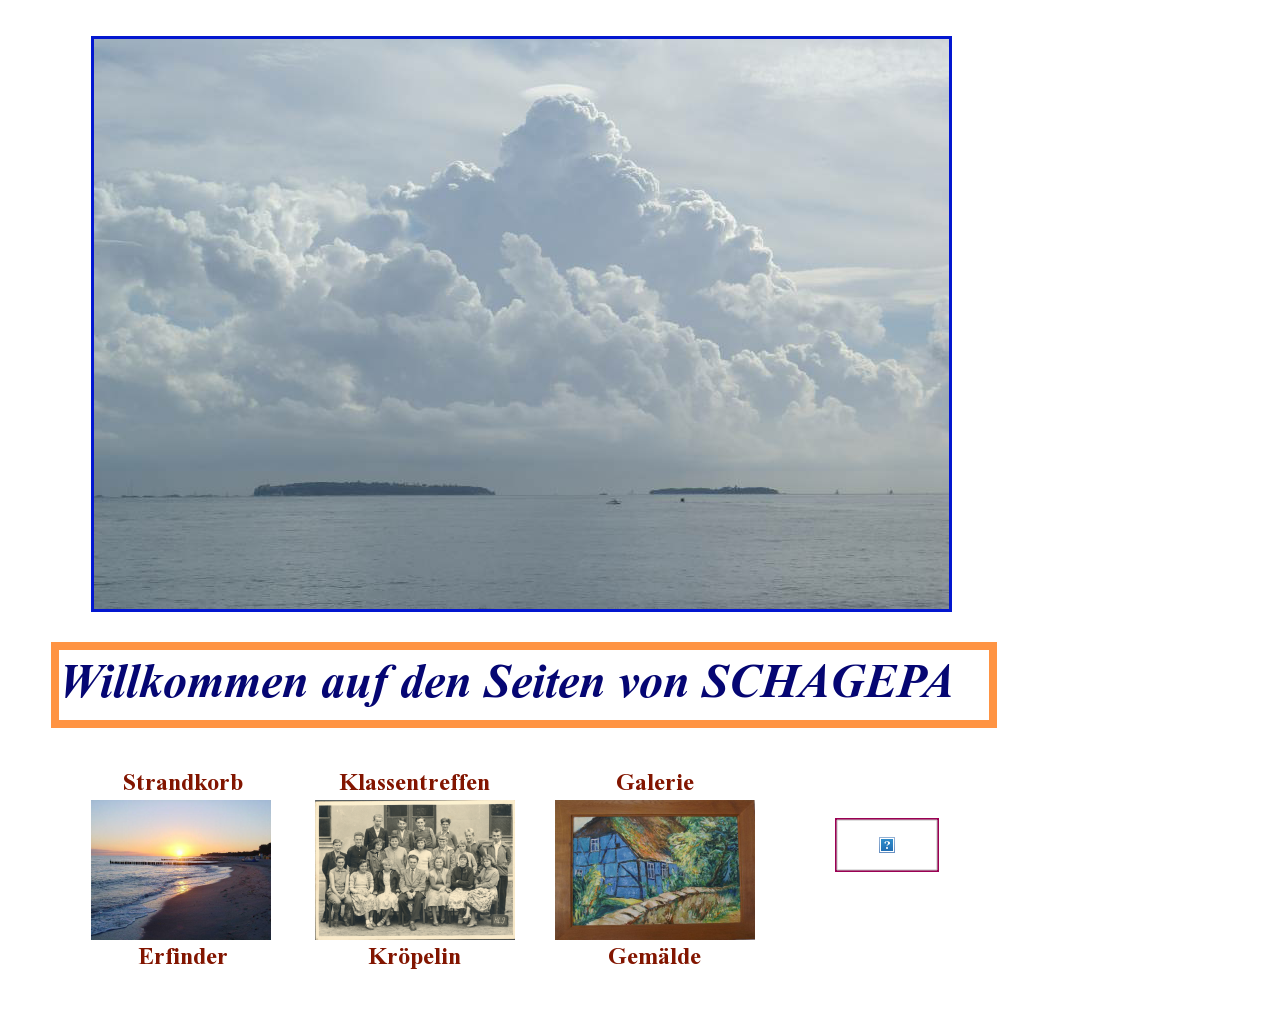 Bild Website schagepa.de in 1280x1024